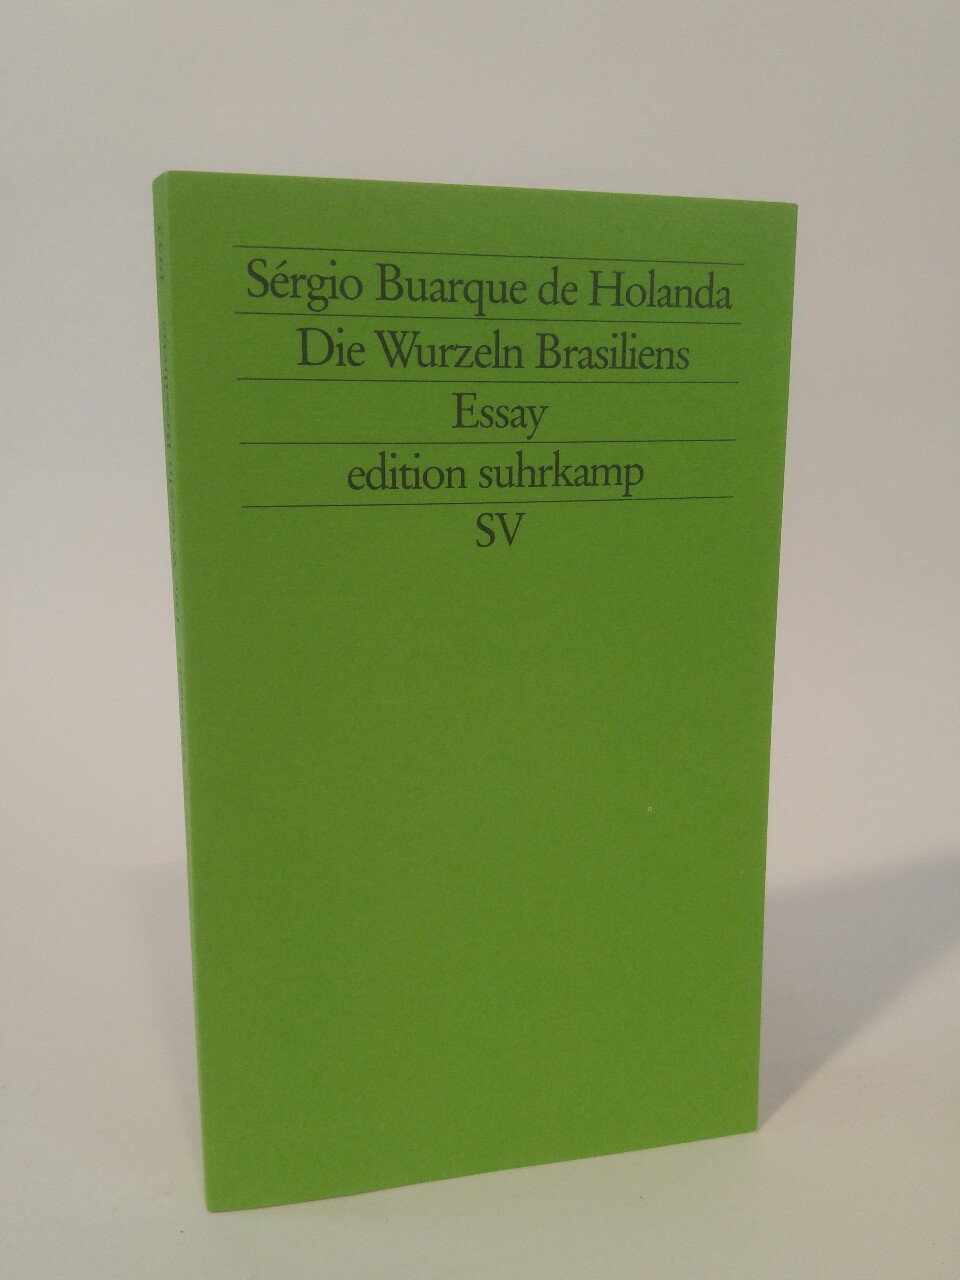 Die Wurzeln Brasiliens [Neubuch] Essay (edition suhrkamp) 1. Auflage - Buarque de Holanda, Sergio und Maralde Meyer-Minnemann